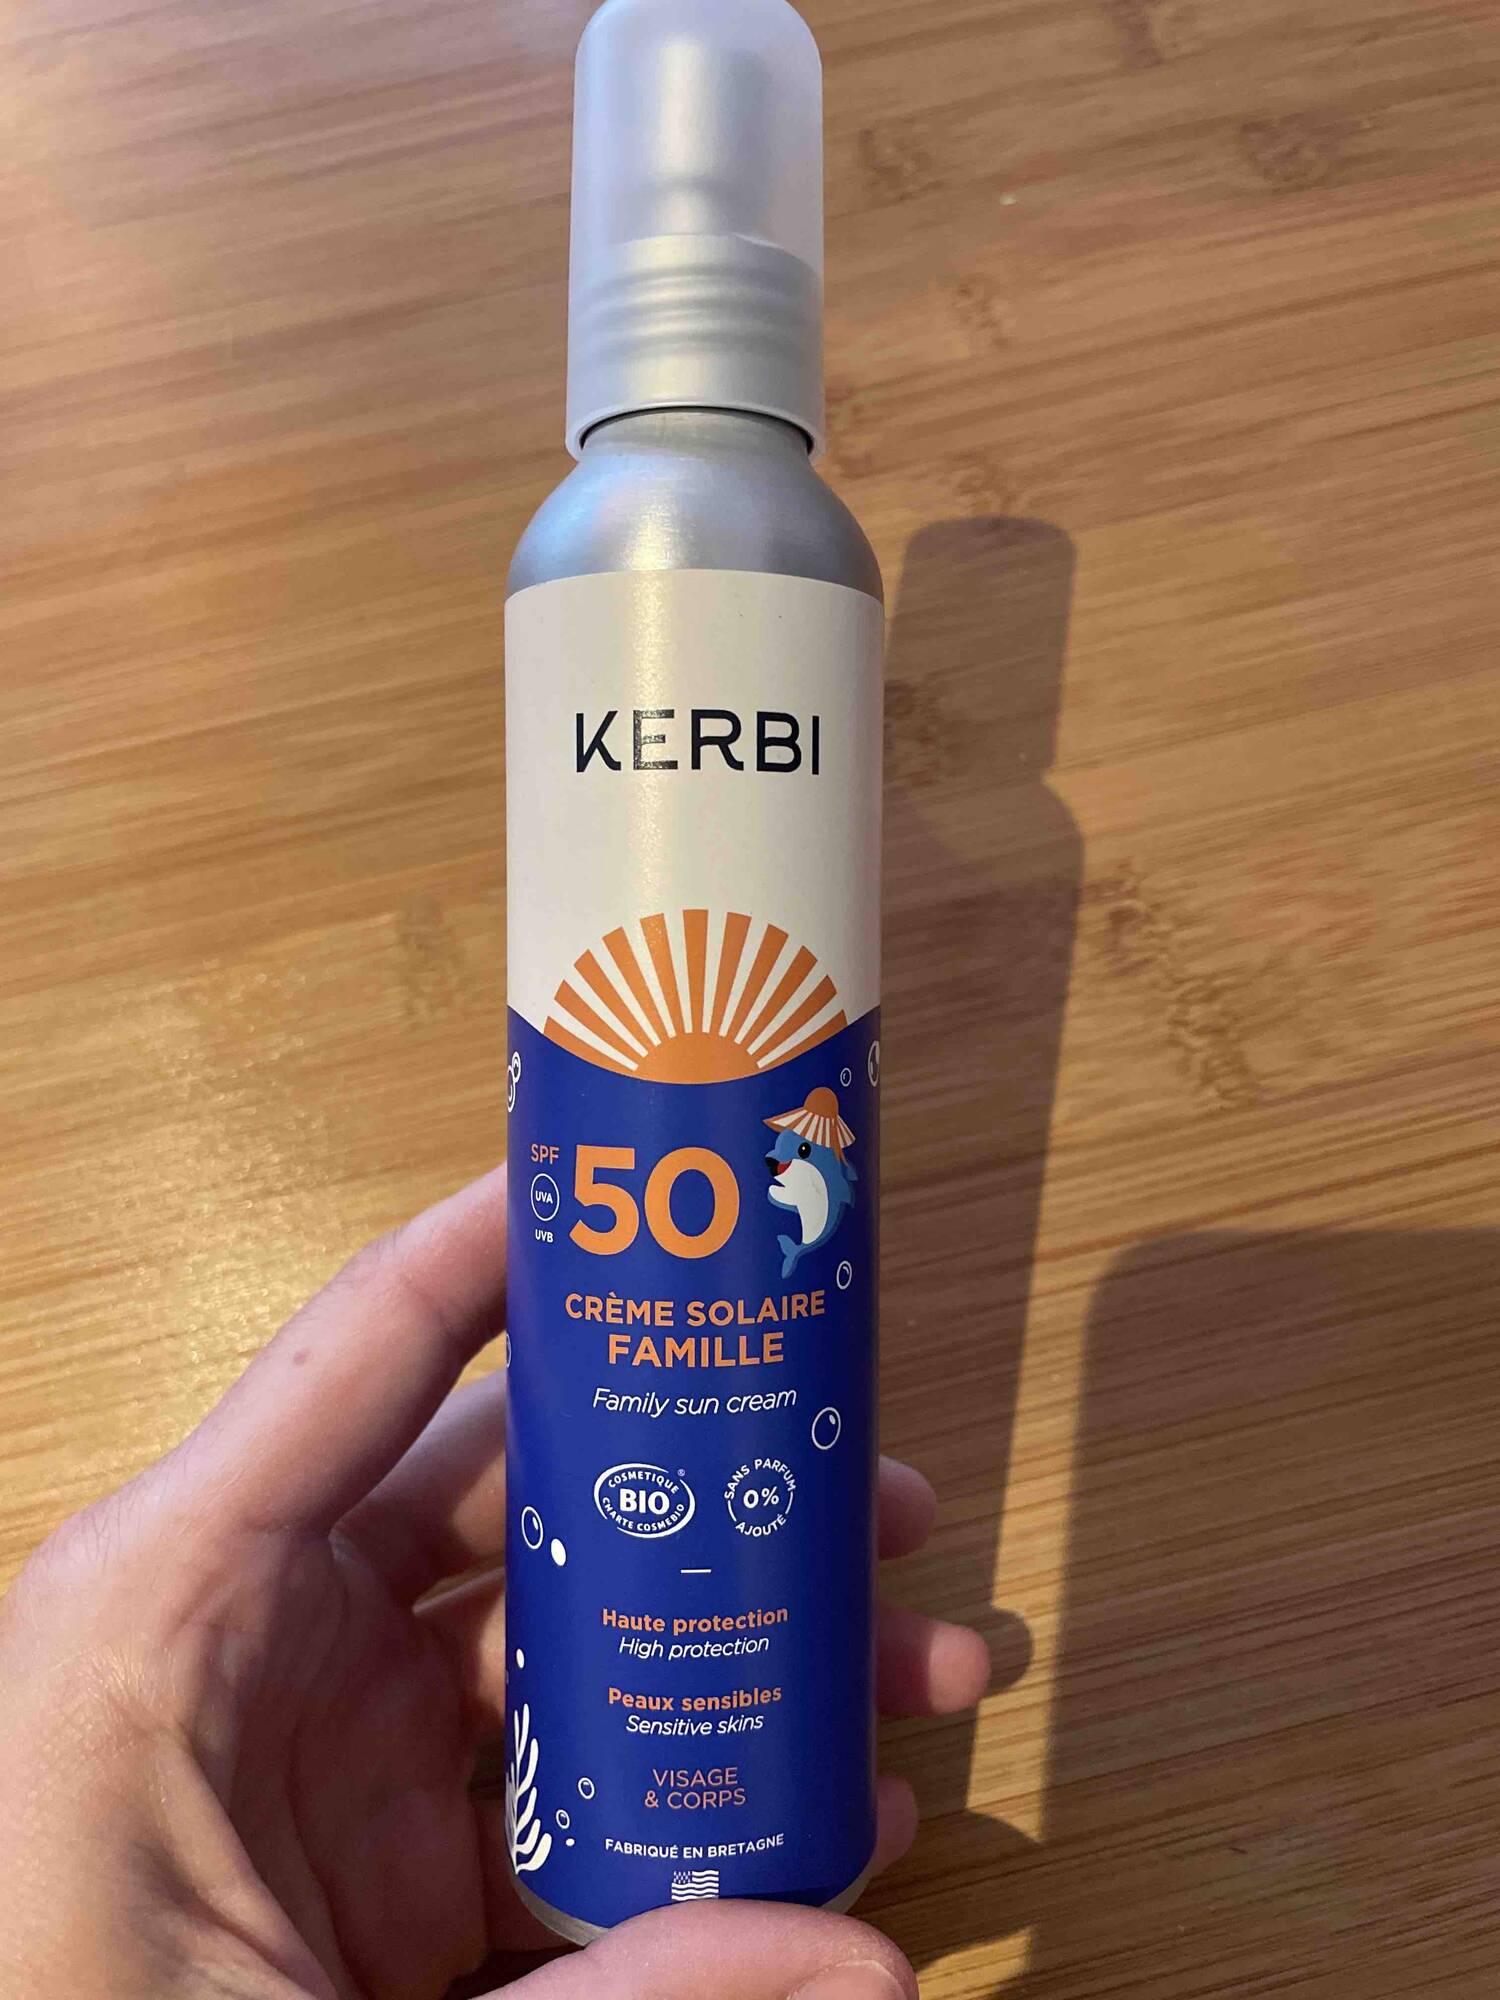 KERBI - Crème solaire famille SPF 50 visage & corps